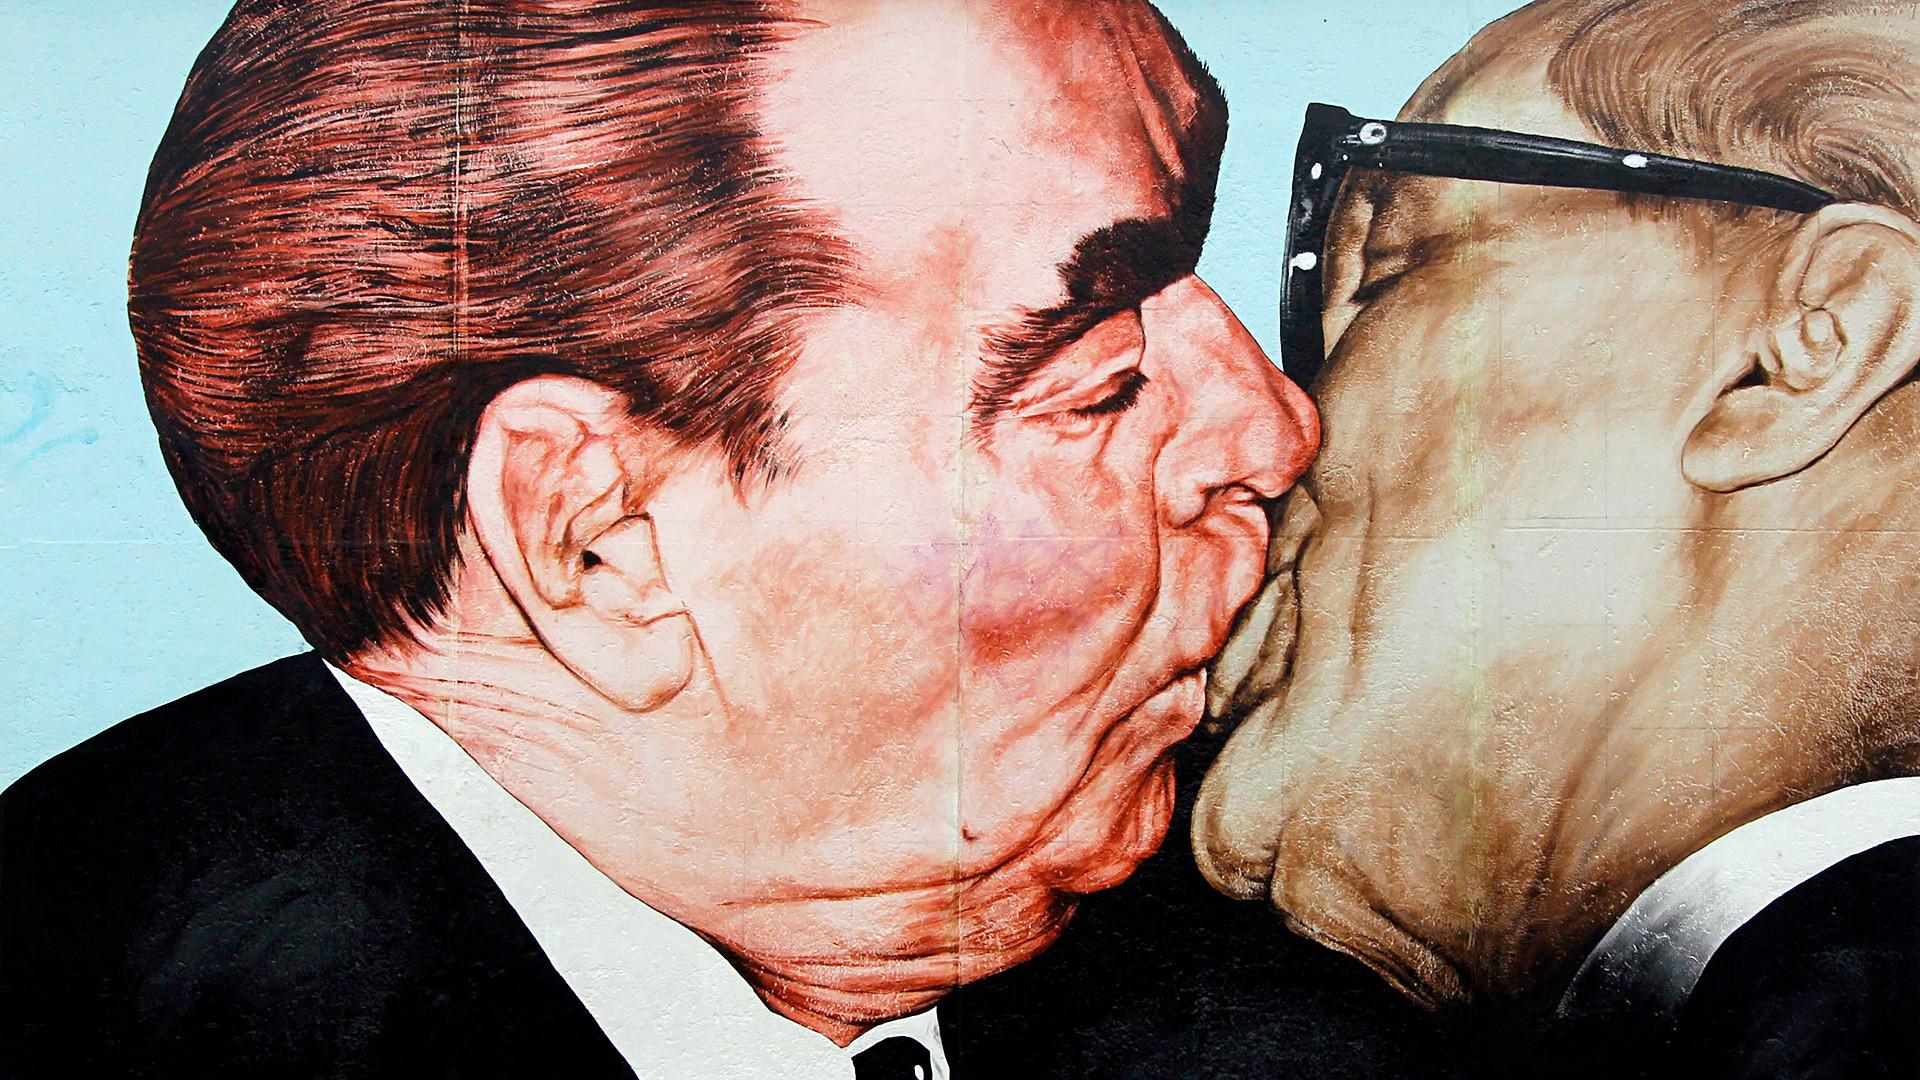 Sovjetski lider ljubio je muškarce u usta: Kastro je to mudro izbjegao, a poljubac s Titom završio je katastrofom